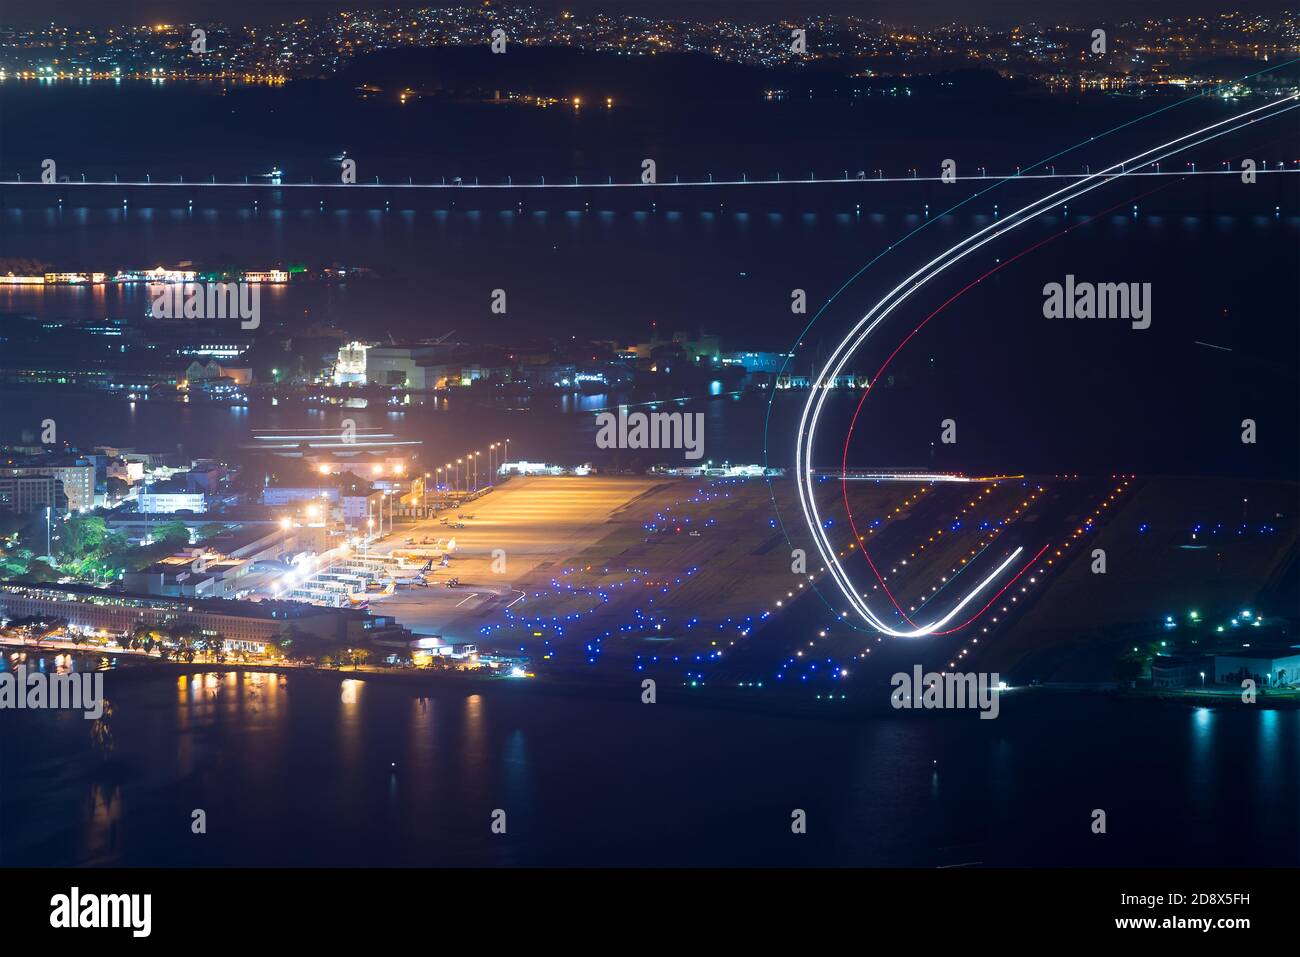 Aéroport Santos Dumont de Rio de Janeiro la nuit au Brésil. Exposition longue montrant les traces de lumière de l'avion pendant le décollage. Départ de l'avion sur une piste lumineuse. Banque D'Images